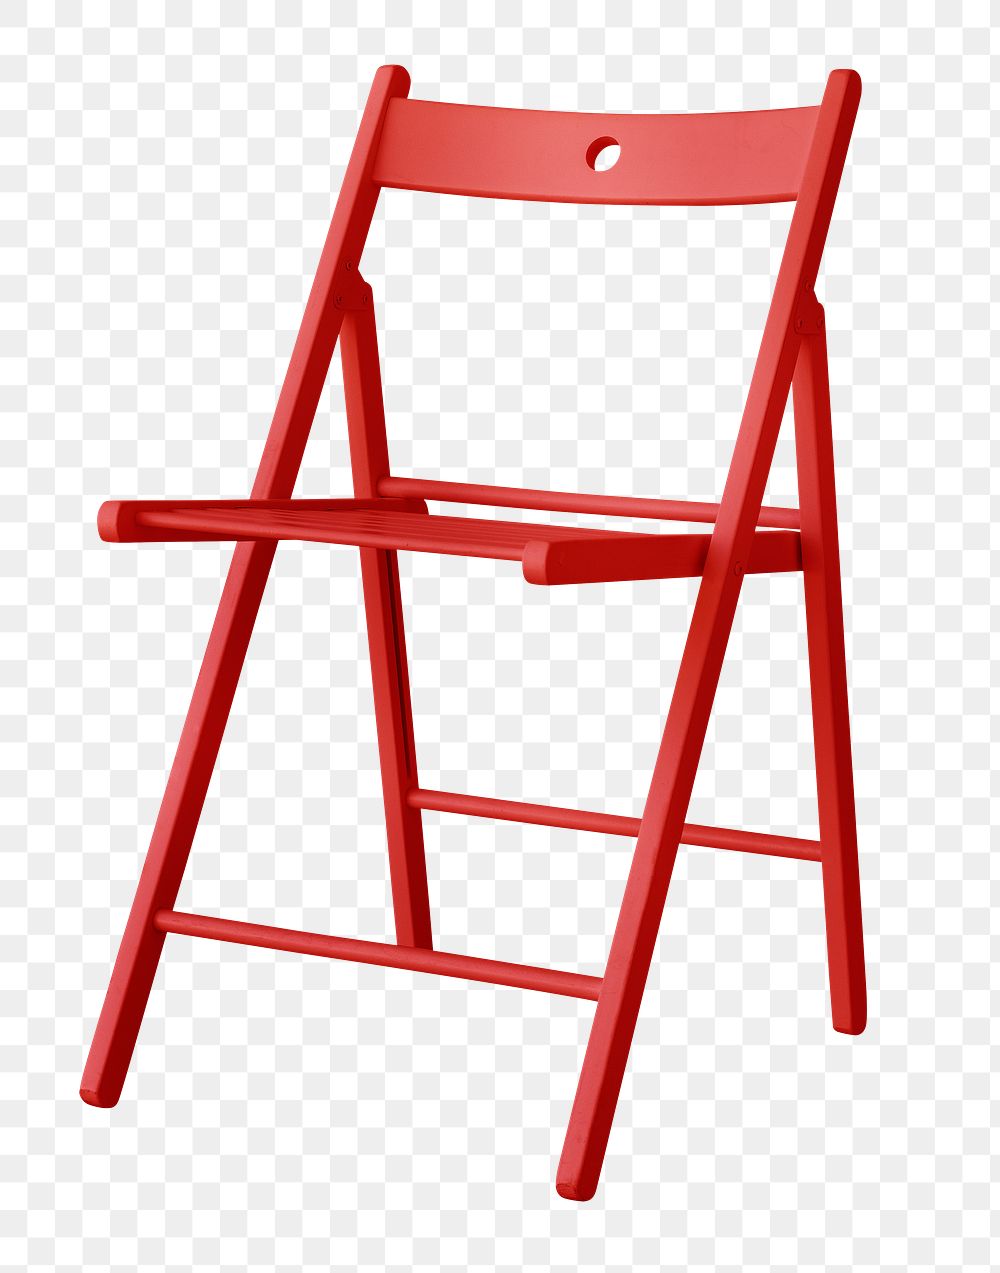 Modern red chair design element